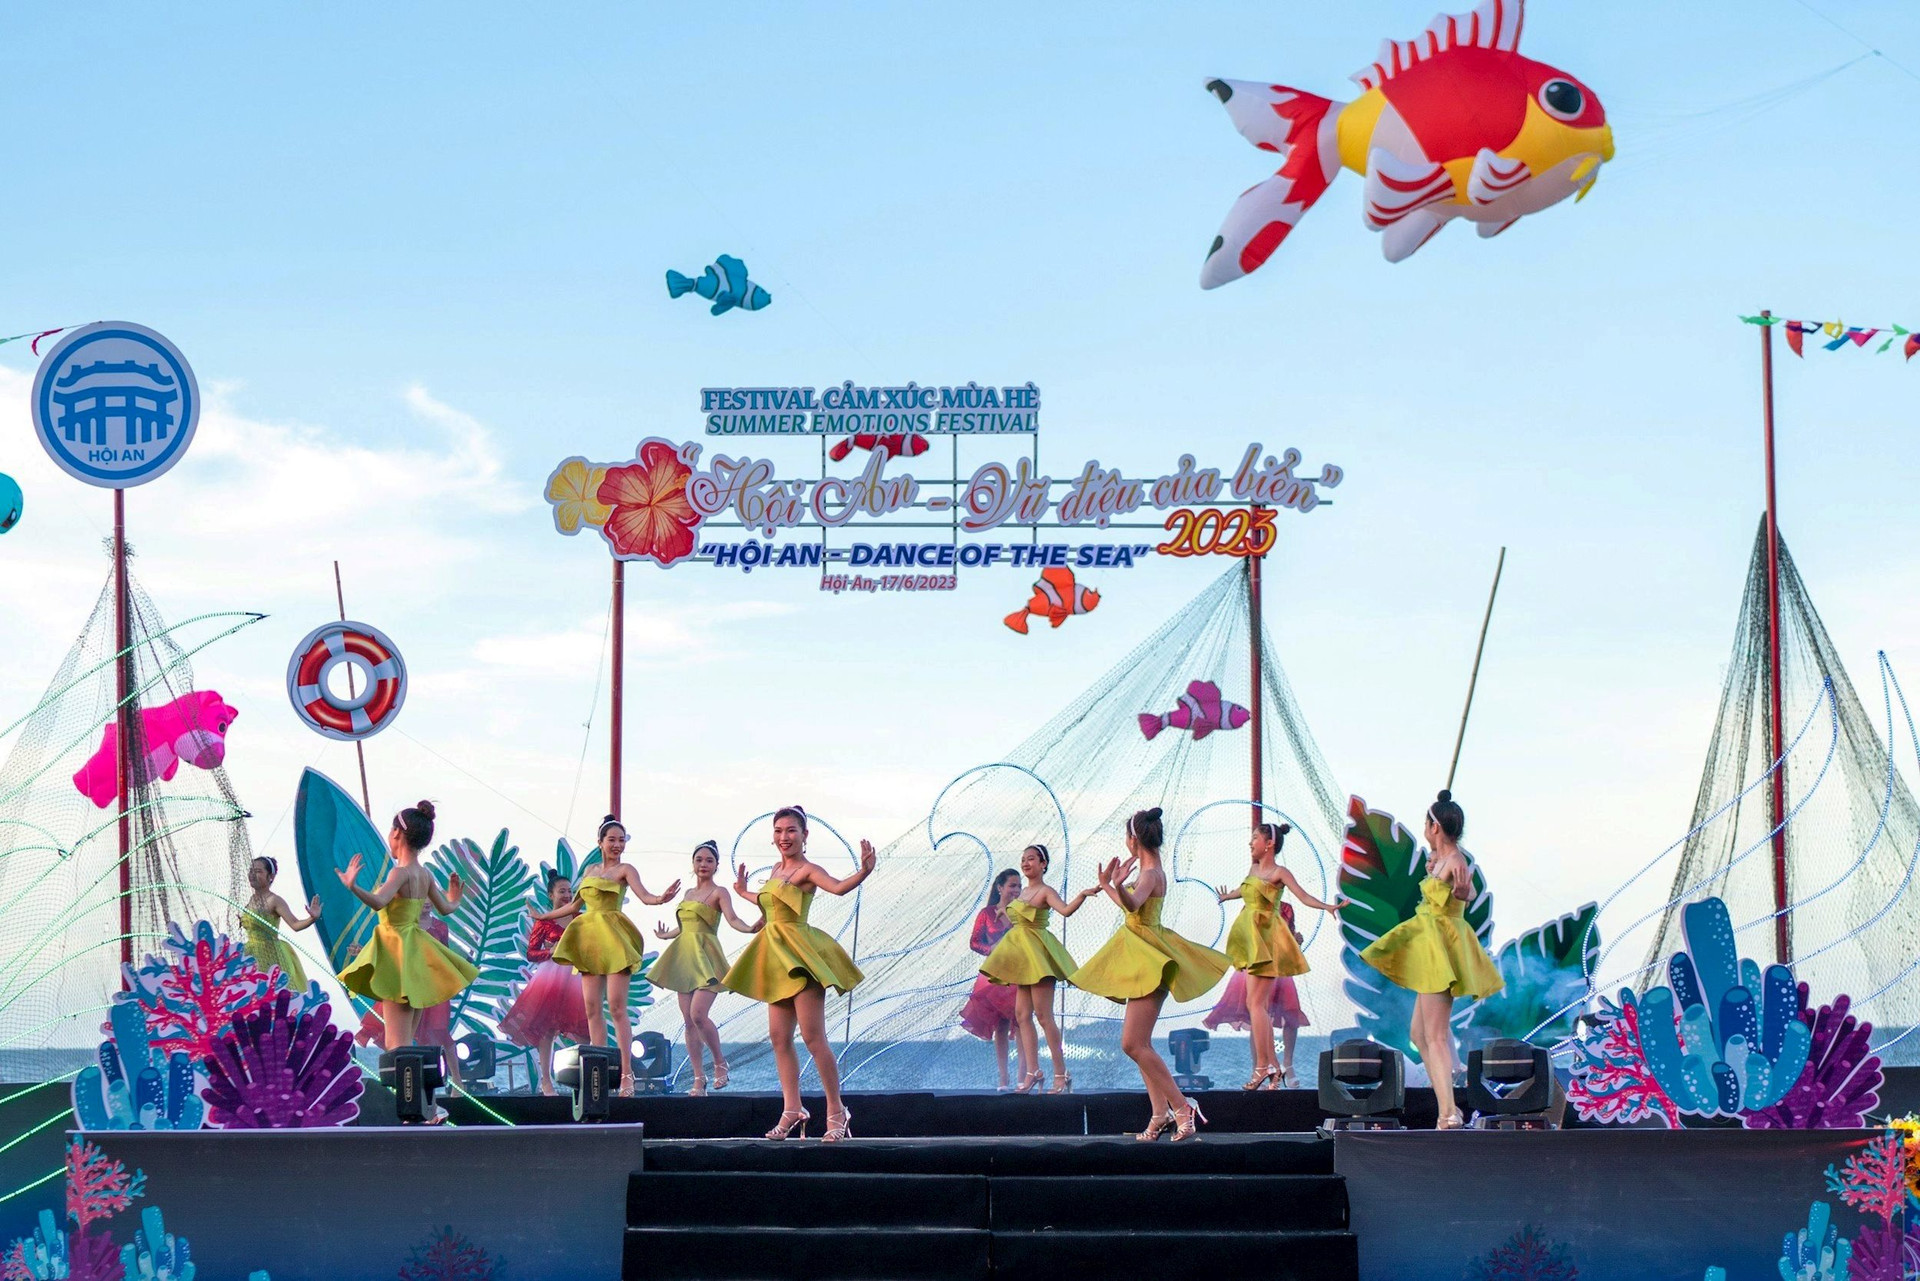 Trình diễn vũ hội là một hoạt động được khán giả ưa thích tại Festival biển “Hội An – Cảm xúc mùa hè”. Ảnh: ĐỖ HUẤN